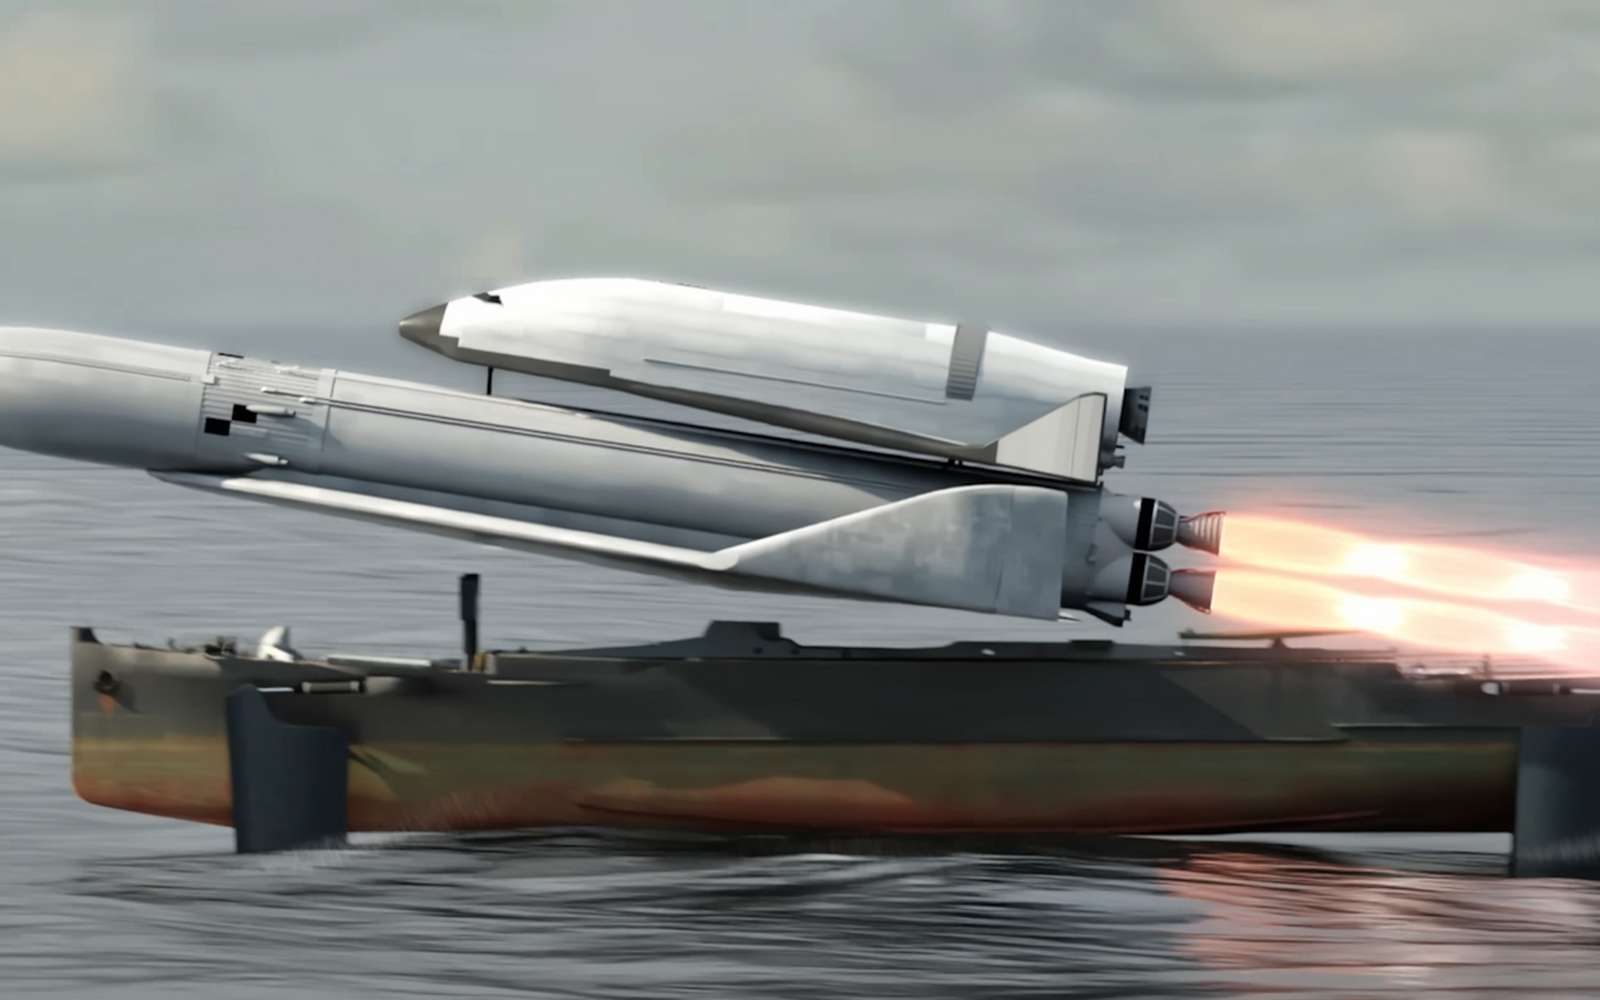 Le projet fou d'une navette spatiale soviétique lancée depuis une barge hydroptère reconstitué en vidéo